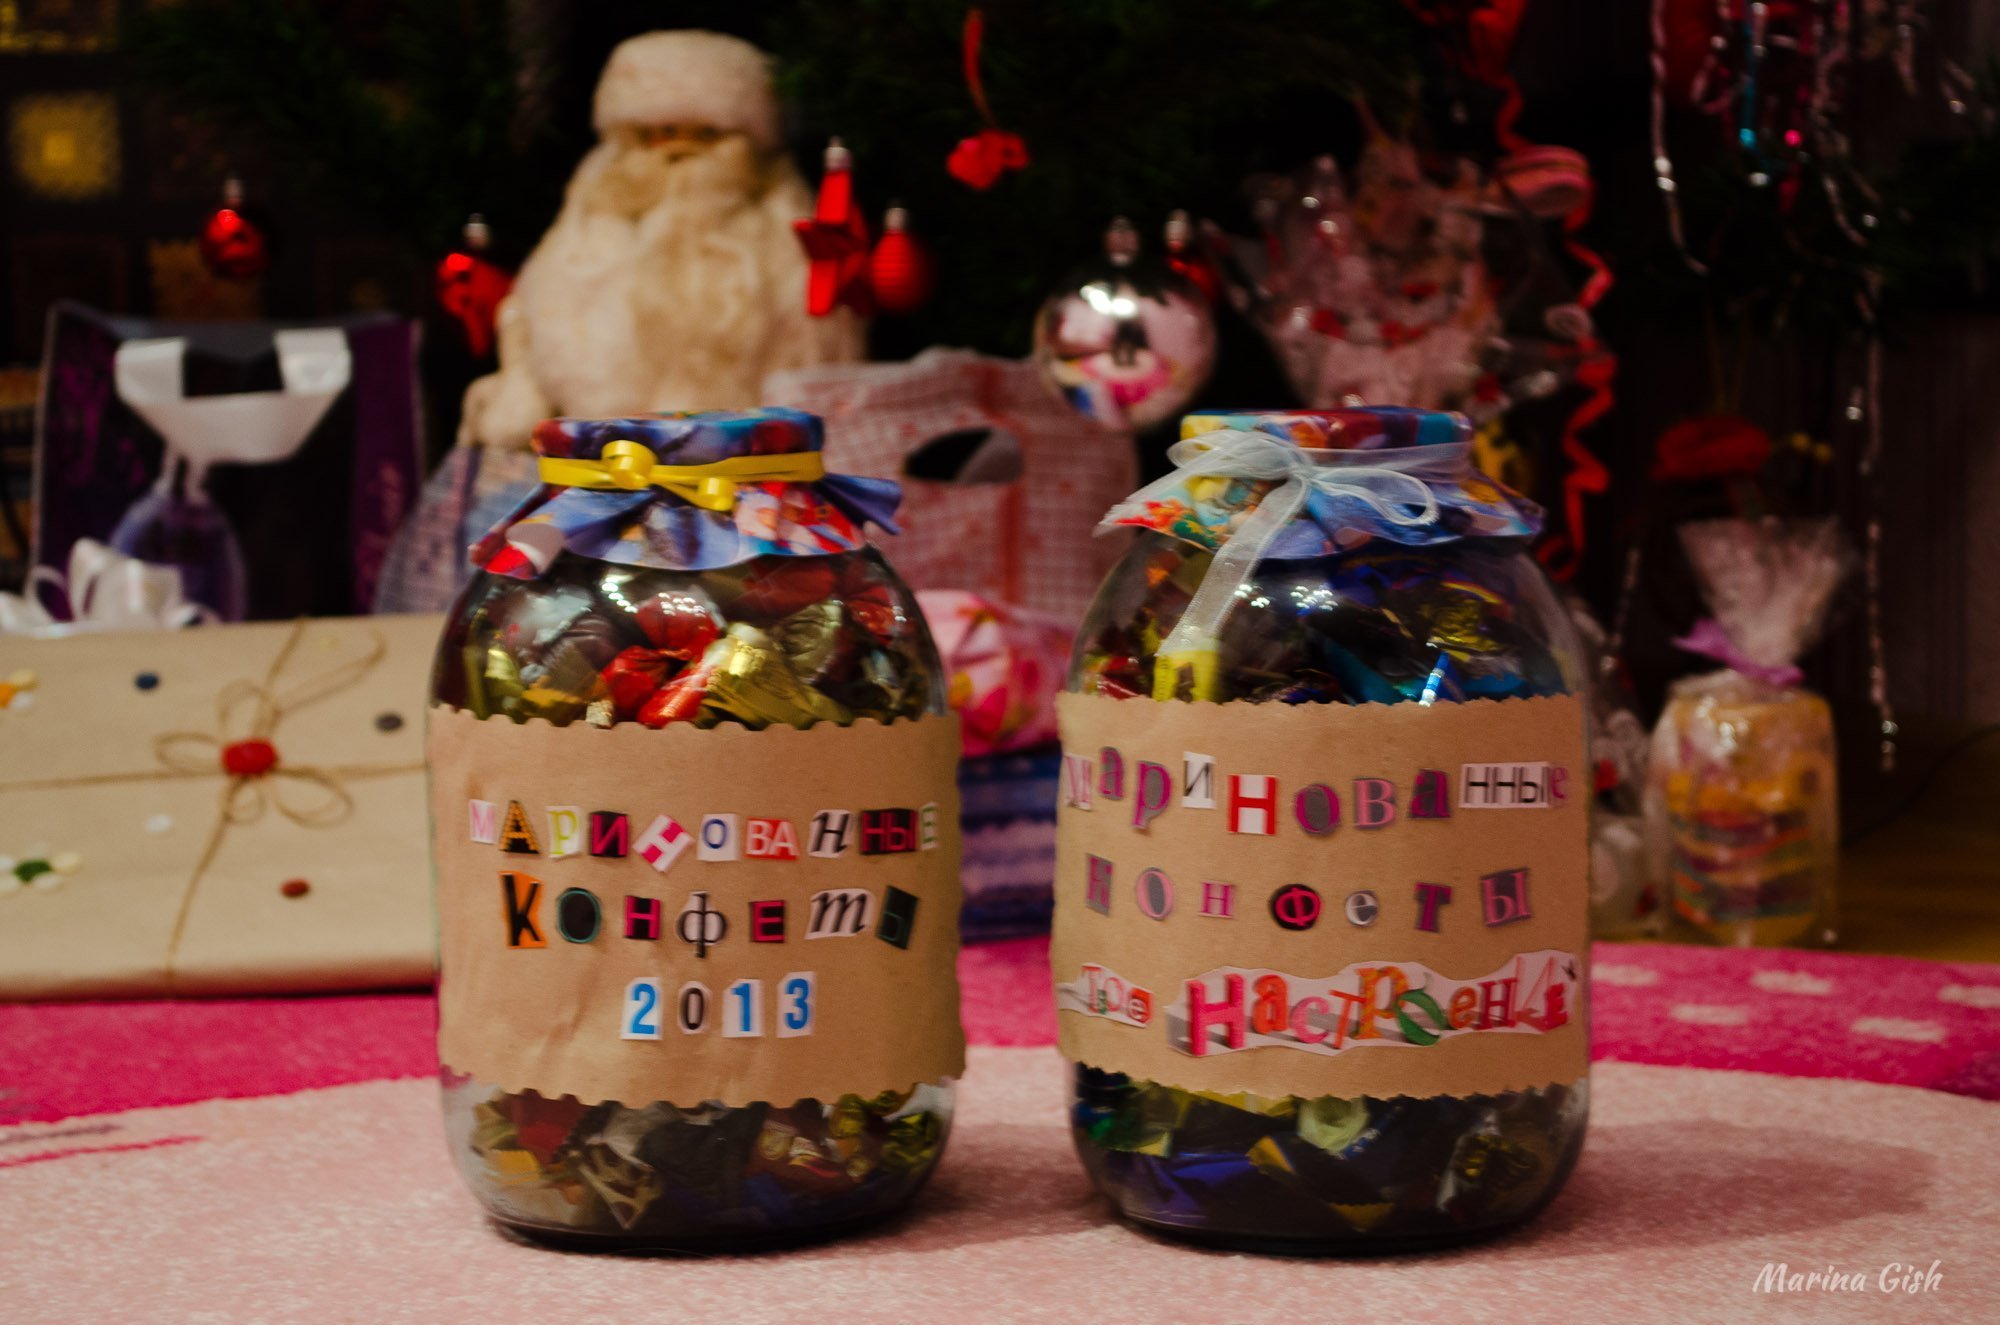 Подарки на новый год друзьям из конфет идеи что подарить и как оформить фото